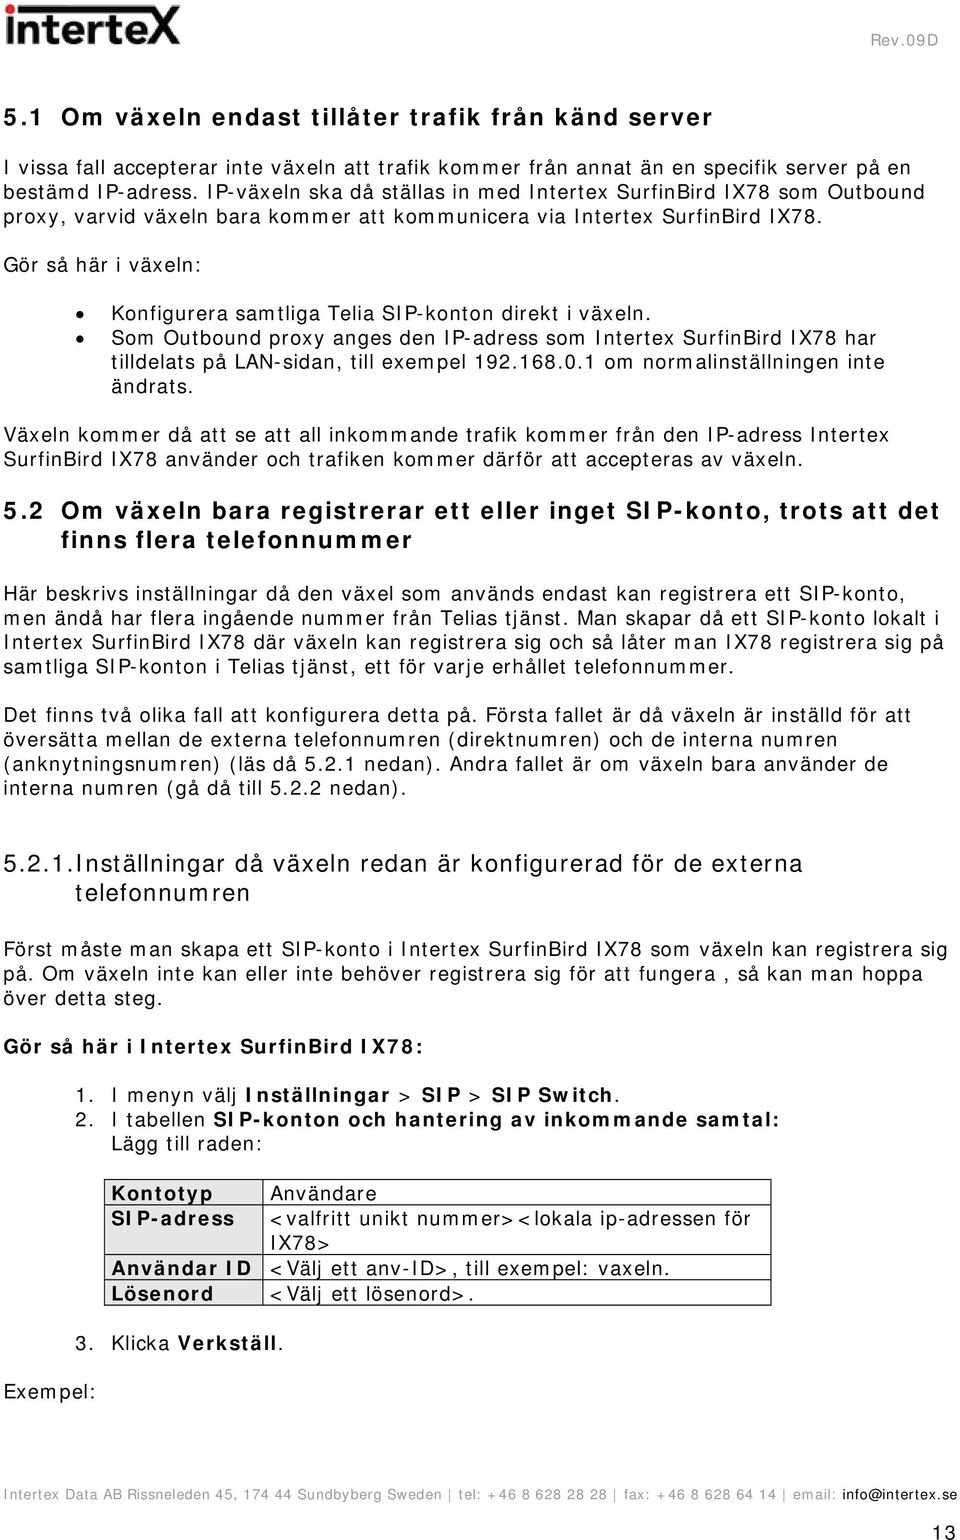 Konfigurering av Intertex SurfinBird IX78 tillsammans med IP-växlar och  Telia SIP-anslutning över Telia Bredband Företag och Telia ProLane - PDF  Gratis nedladdning